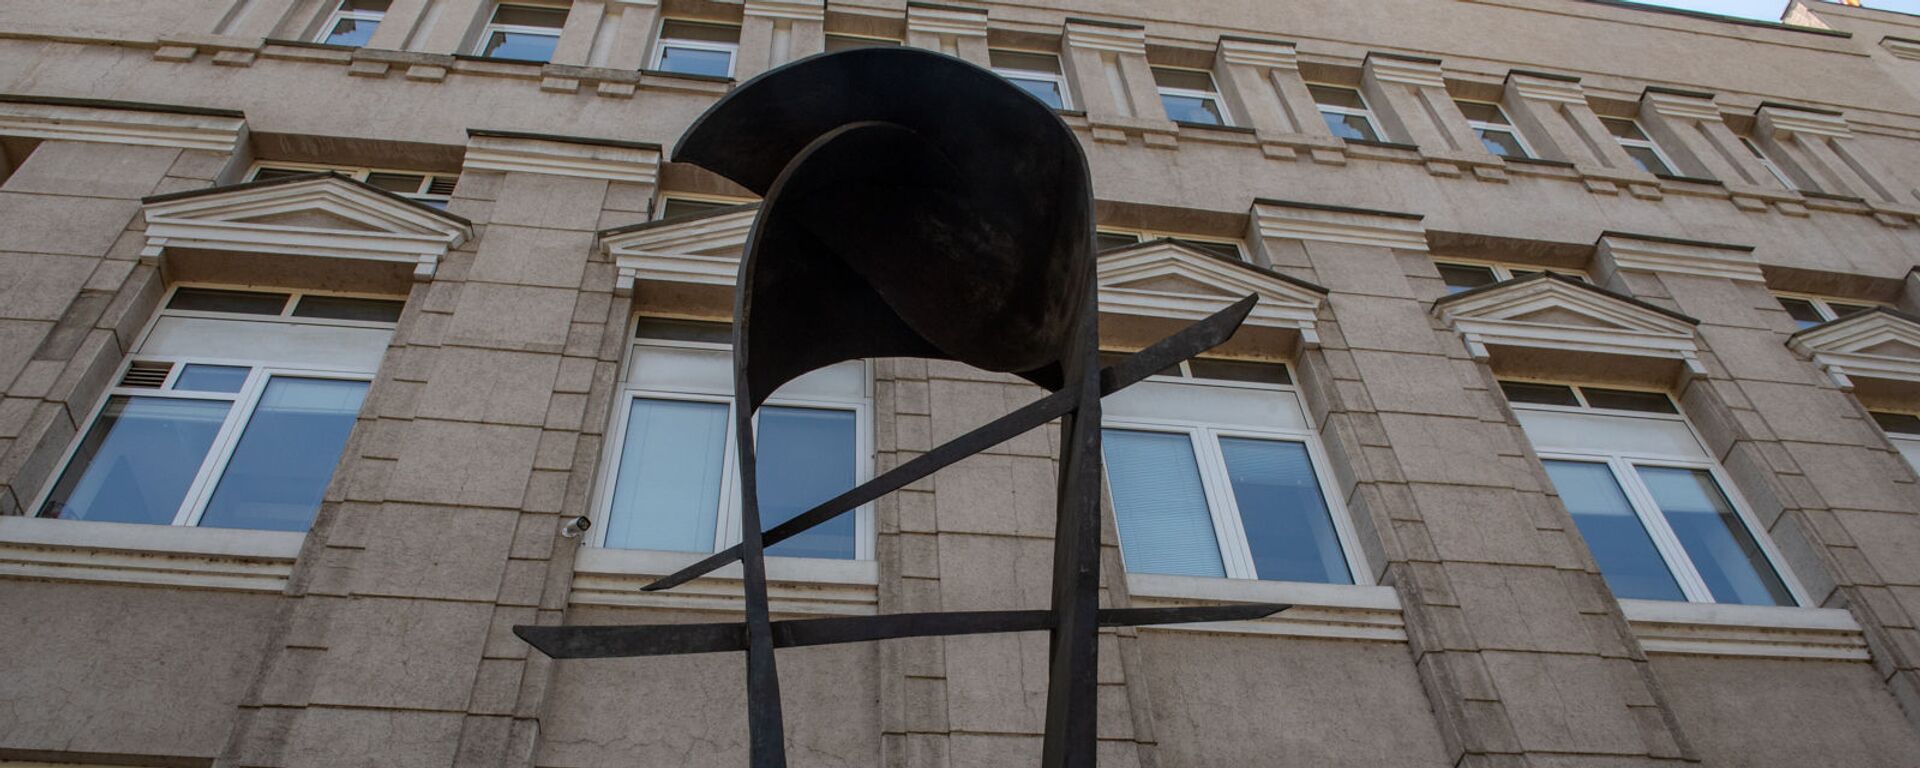 Скульптура армянскому драму перед зданием Центрального Банка Армении - Sputnik Արմենիա, 1920, 30.06.2021